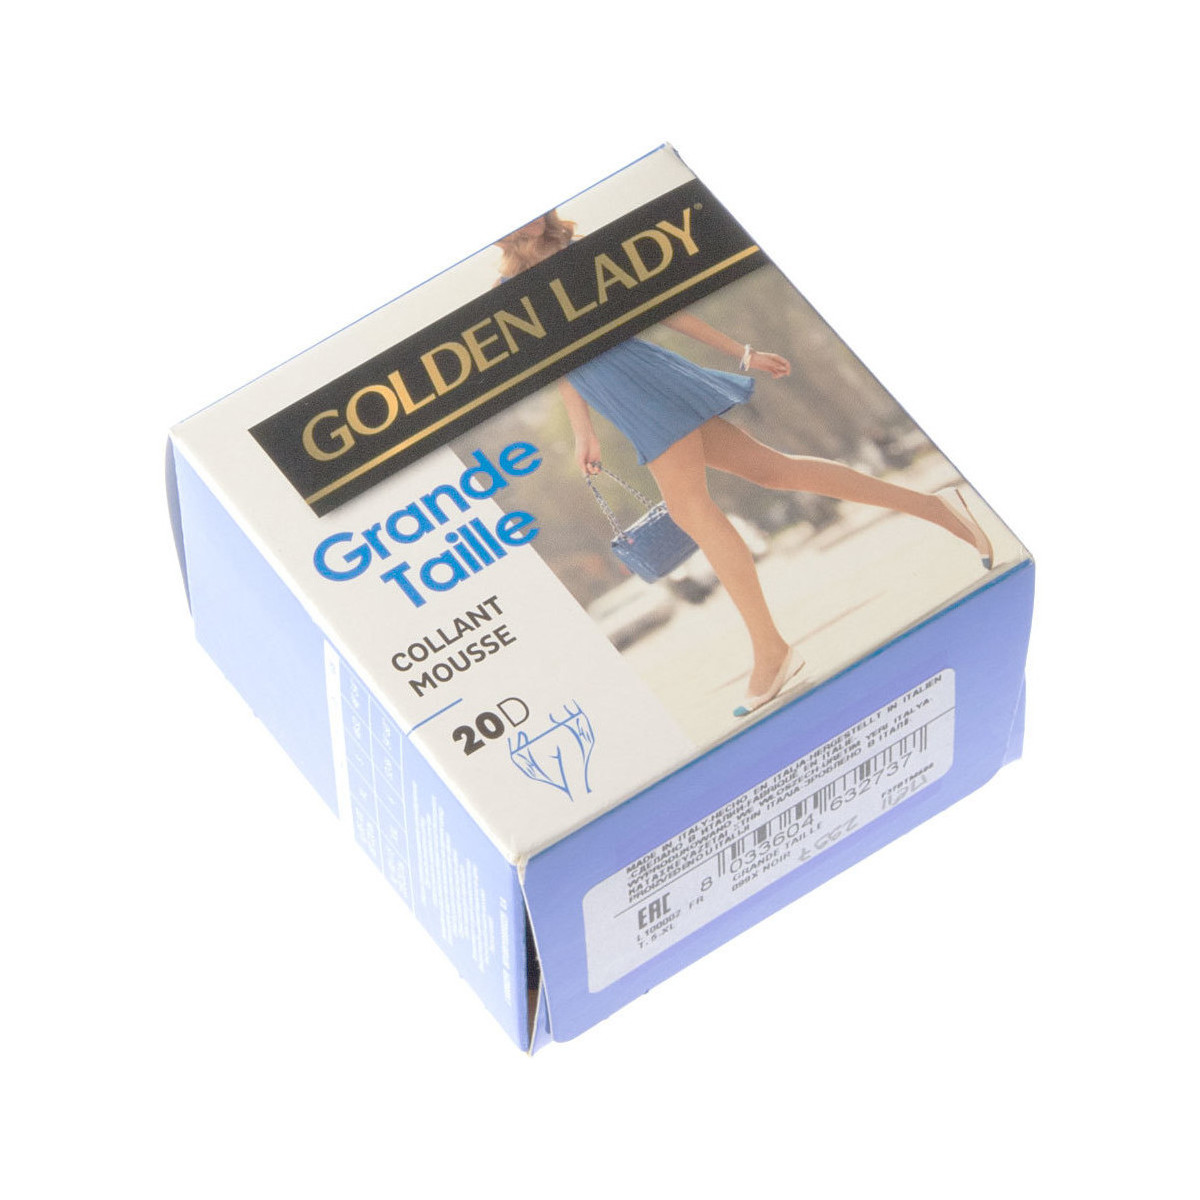 Golden Lady Collant fin - Transparent - Grande taille Noir - Sous-vêtements  Collants & bas Femme 4,50 €